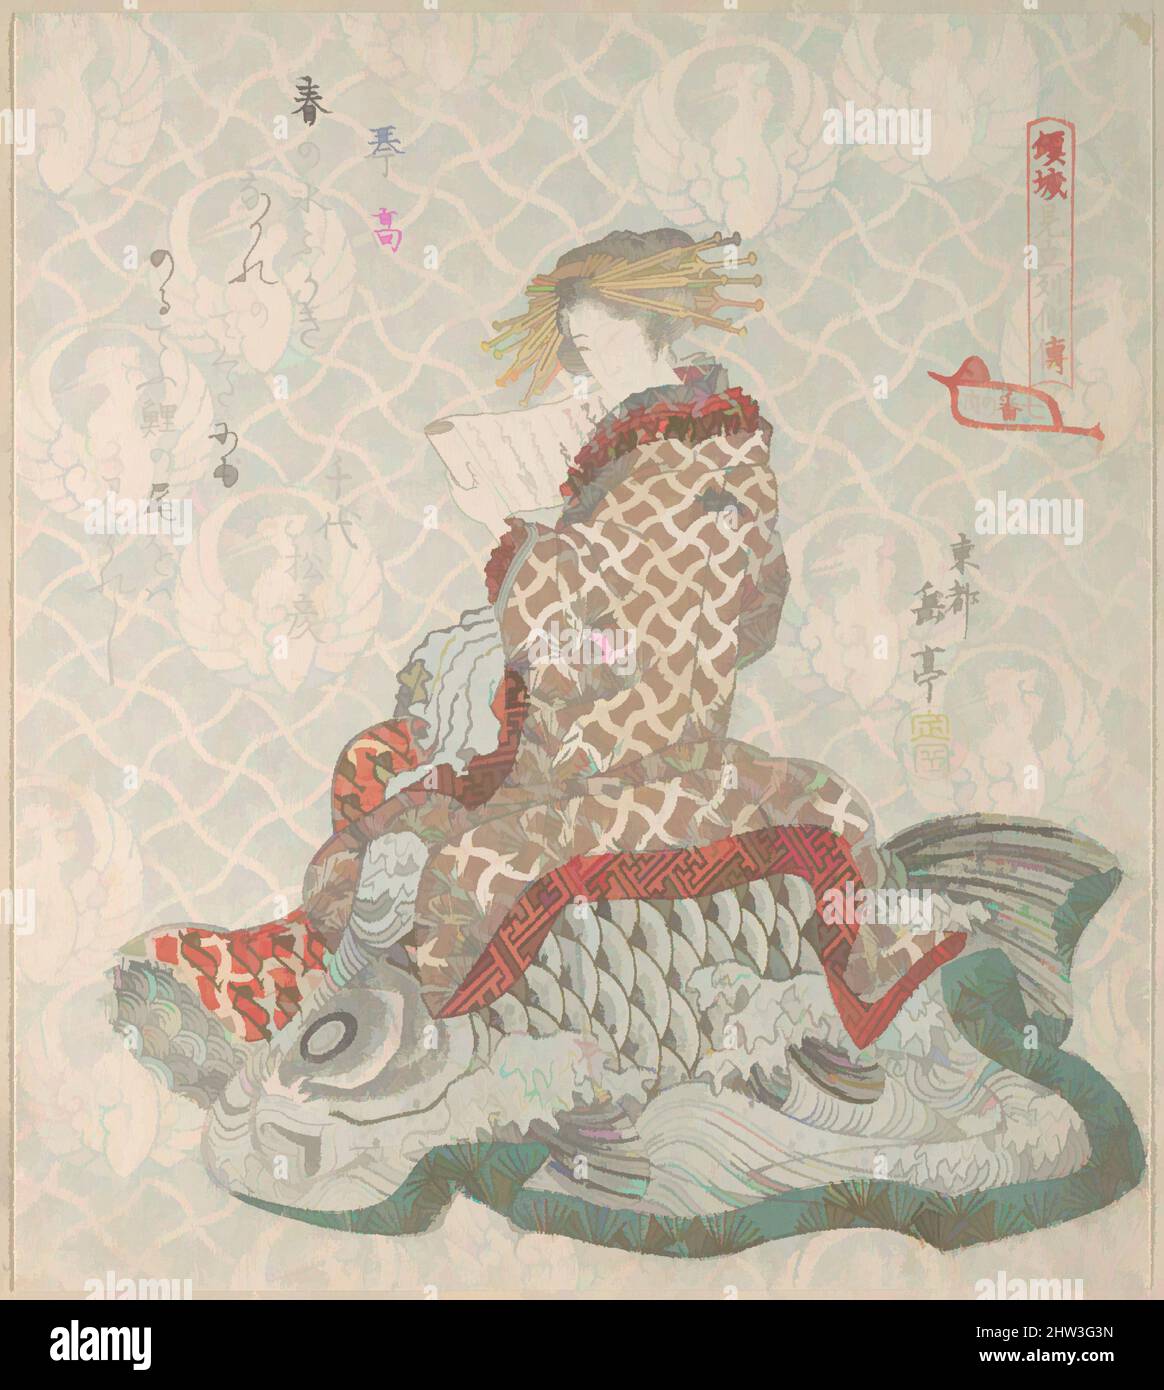 Art inspiré par le courtesan assis sur un Carp, époque Edo (1615–1868), 19th Century, Japon, imprimé polychrome (surimono); encre et couleur sur papier, 8 1/16 x 7 1/4 po. (20,5 x 18,4 cm), tirages, Yashima Gakutei (japonais, 1786?–1868, œuvres classiques modernisées par Artotop avec une touche de modernité. Formes, couleur et valeur, impact visuel accrocheur sur l'art émotions par la liberté d'œuvres d'art d'une manière contemporaine. Un message intemporel qui cherche une nouvelle direction créative. Artistes qui se tournent vers le support numérique et créent le NFT Artotop Banque D'Images